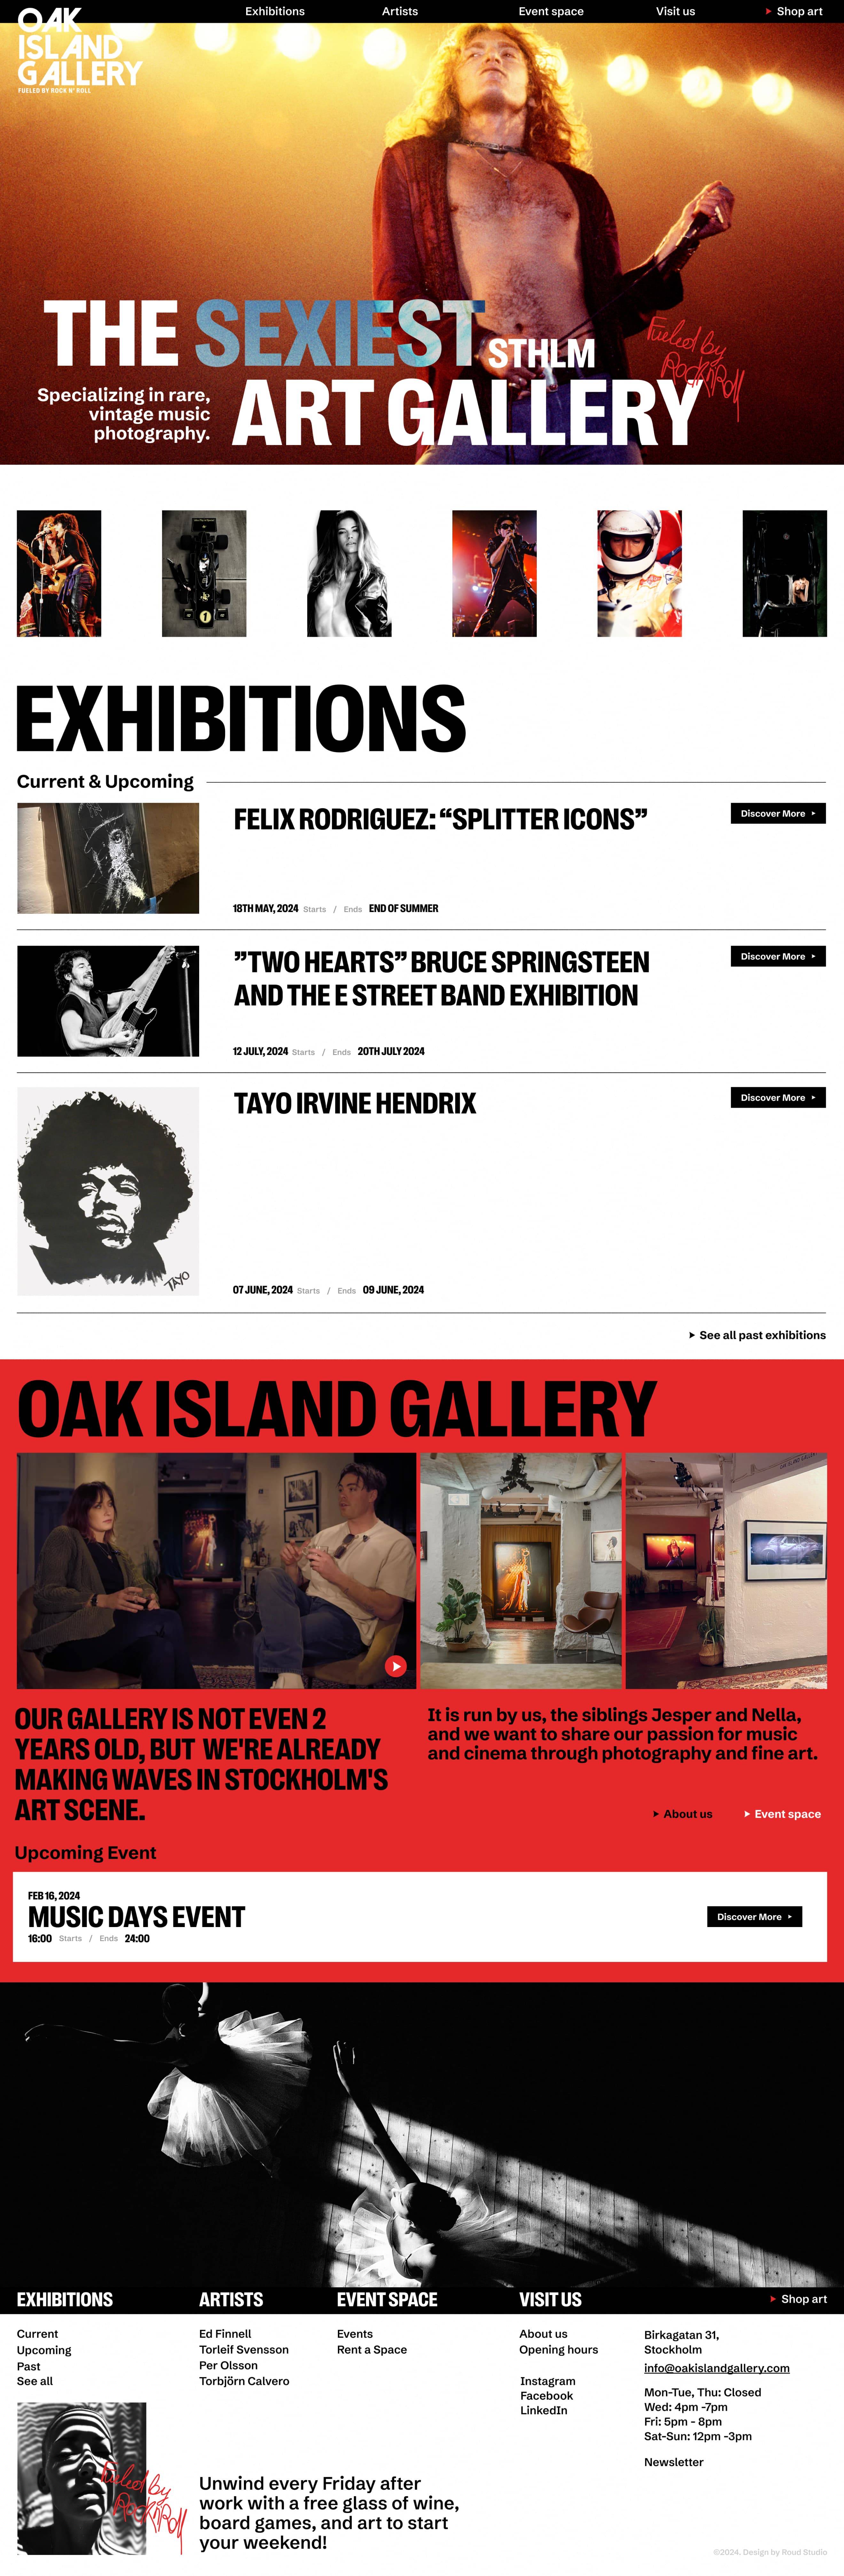 oakisland website design